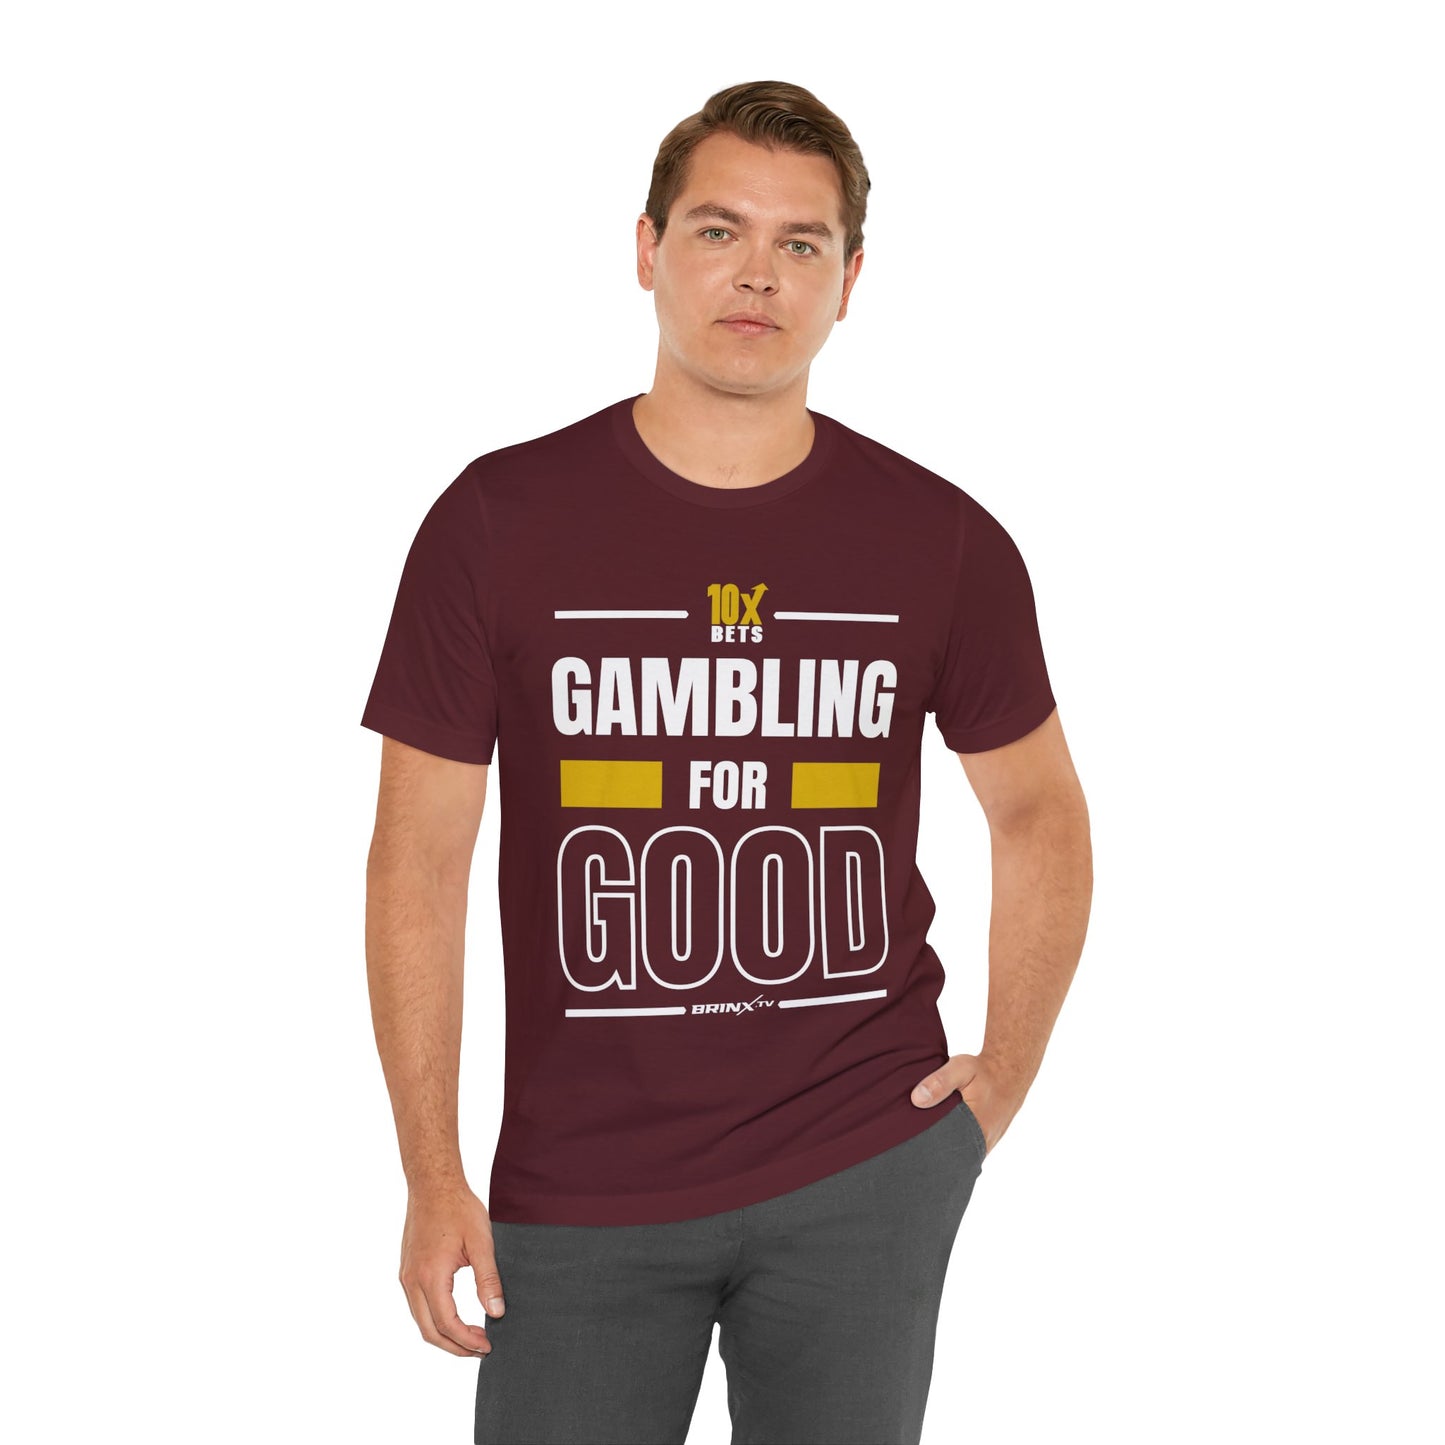 Gambling for Good Tee